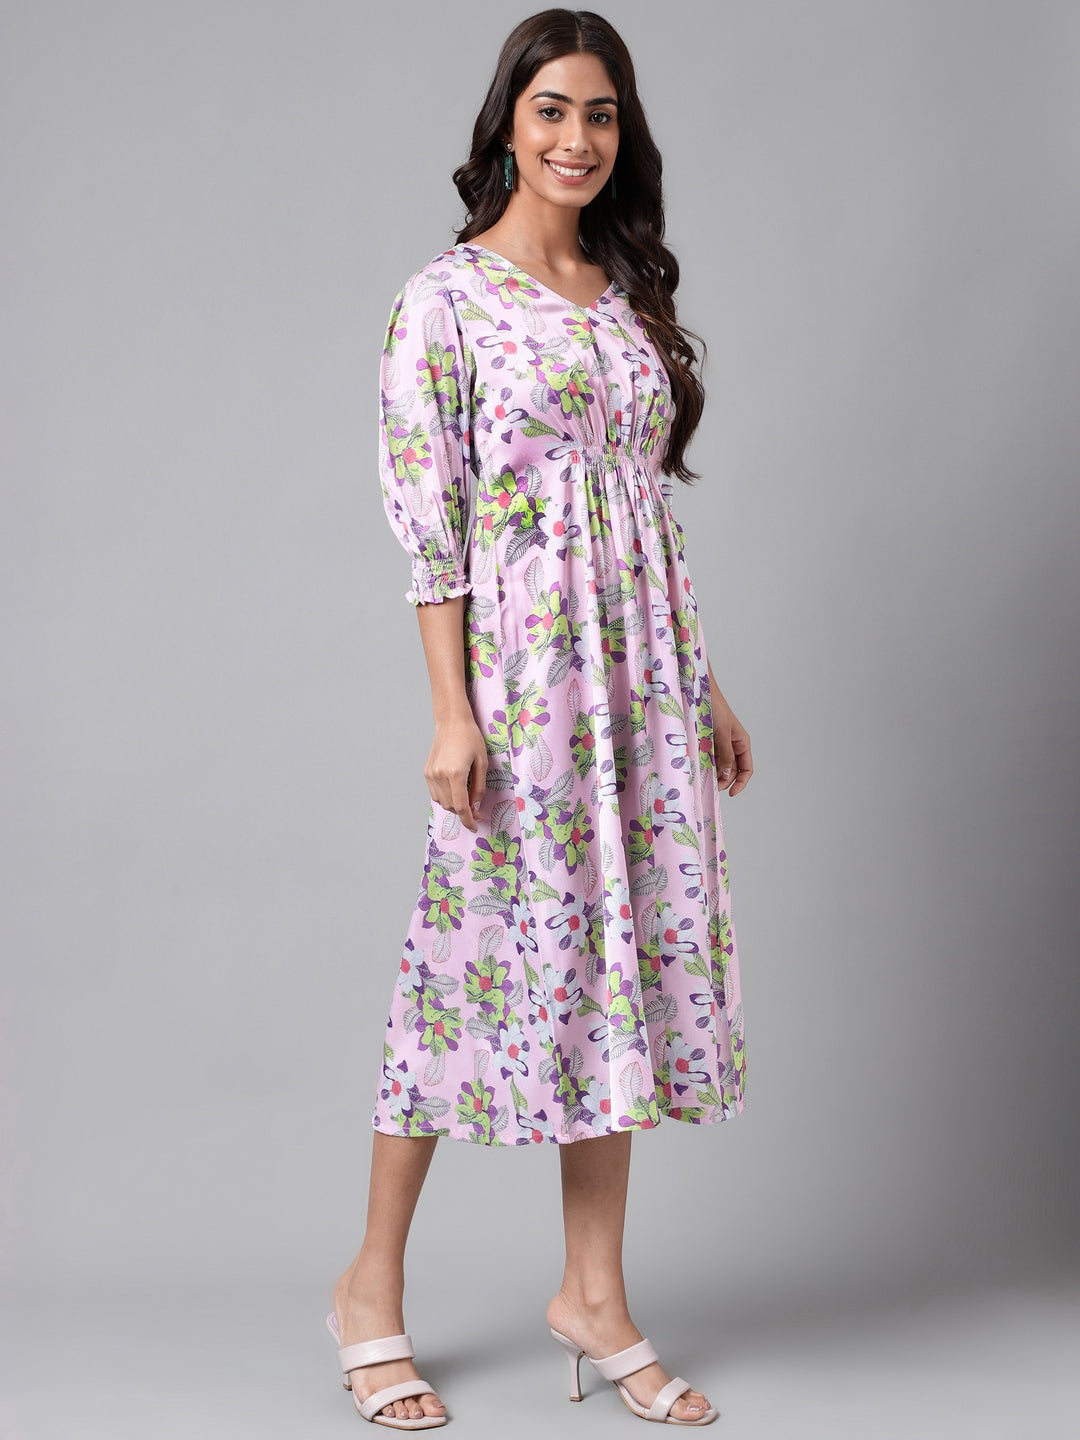 Lavender Satin Digital Floral Printed A-line Dress Janasya